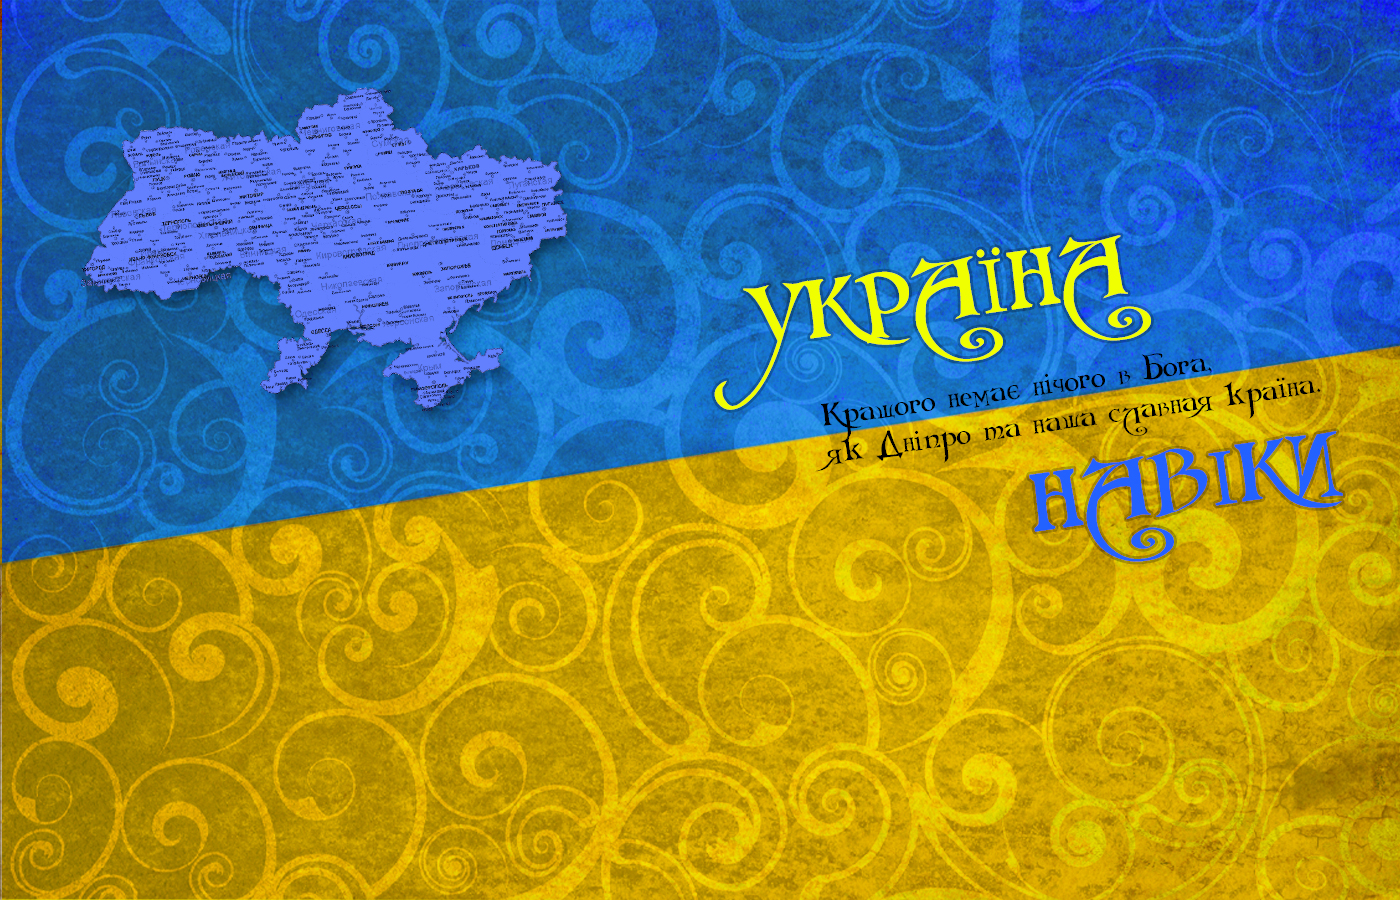 Hình nền iPad và iPhone Ukraine: Cuộc sống trong tầm tay với các hình nền tuyệt đẹp của Ukraine trên thiết bị của bạn. Thoả sức chiêm ngưỡng vẻ đẹp nước cờ này mọi lúc mọi nơi thông qua iPad và iPhone của bạn.